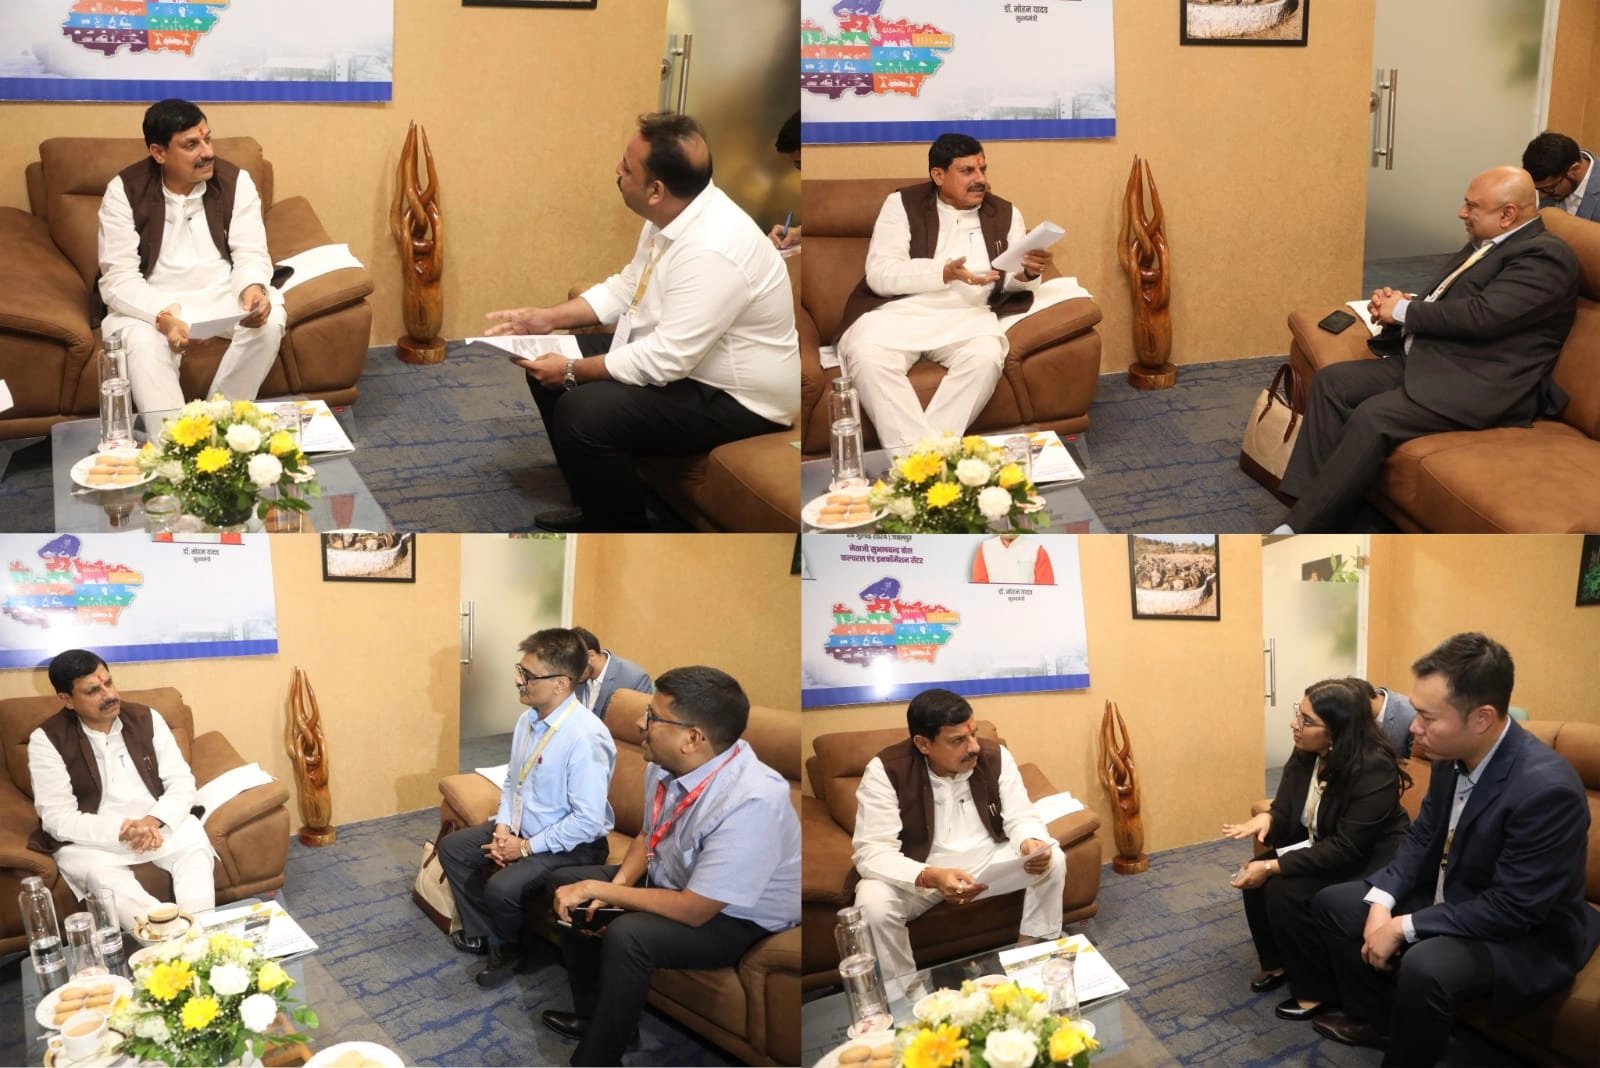 प्रदेश के सभी अंचलों में औद्योगिक गतिविधियों के विस्तार के लिए प्रतिबद्ध है राज्य सरकार :मुख्यमंत्री डॉ मोहन यादव - Mohan government is committed to expanding industrial activities in all areas of the state.